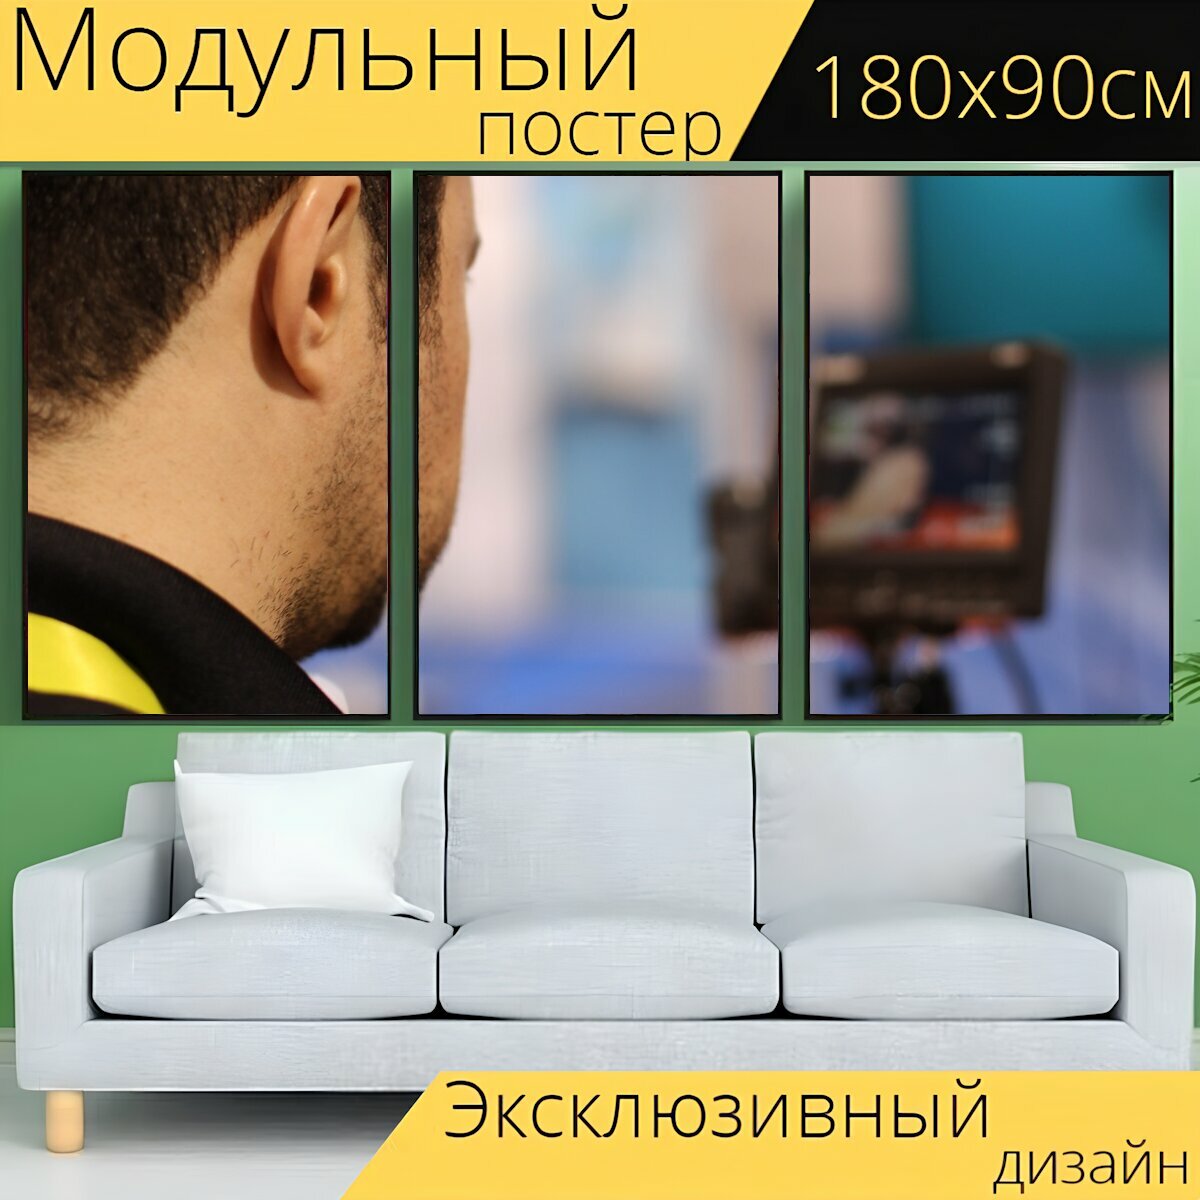 Модульный постер "Телевидение, оператор, видео" 180 x 90 см. для интерьера